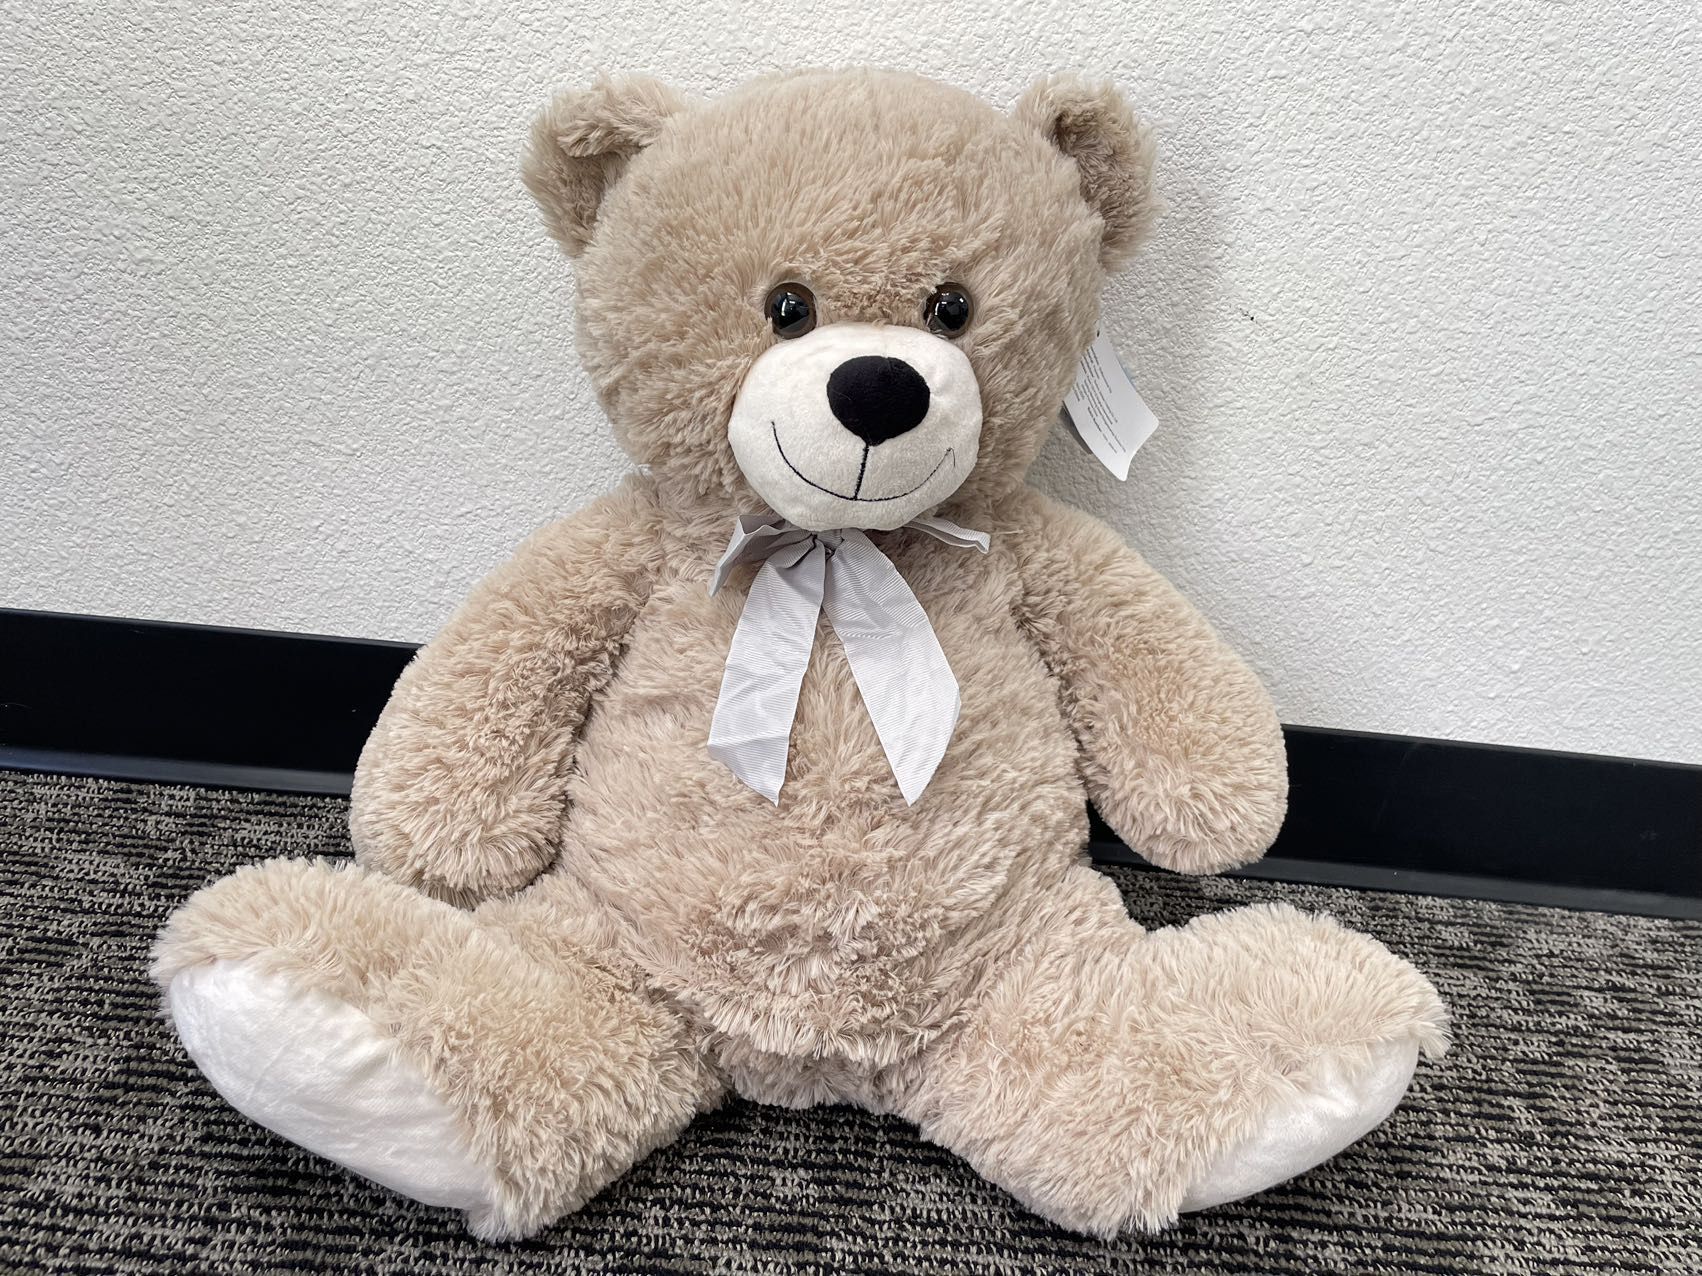 Teddy bear-20inch